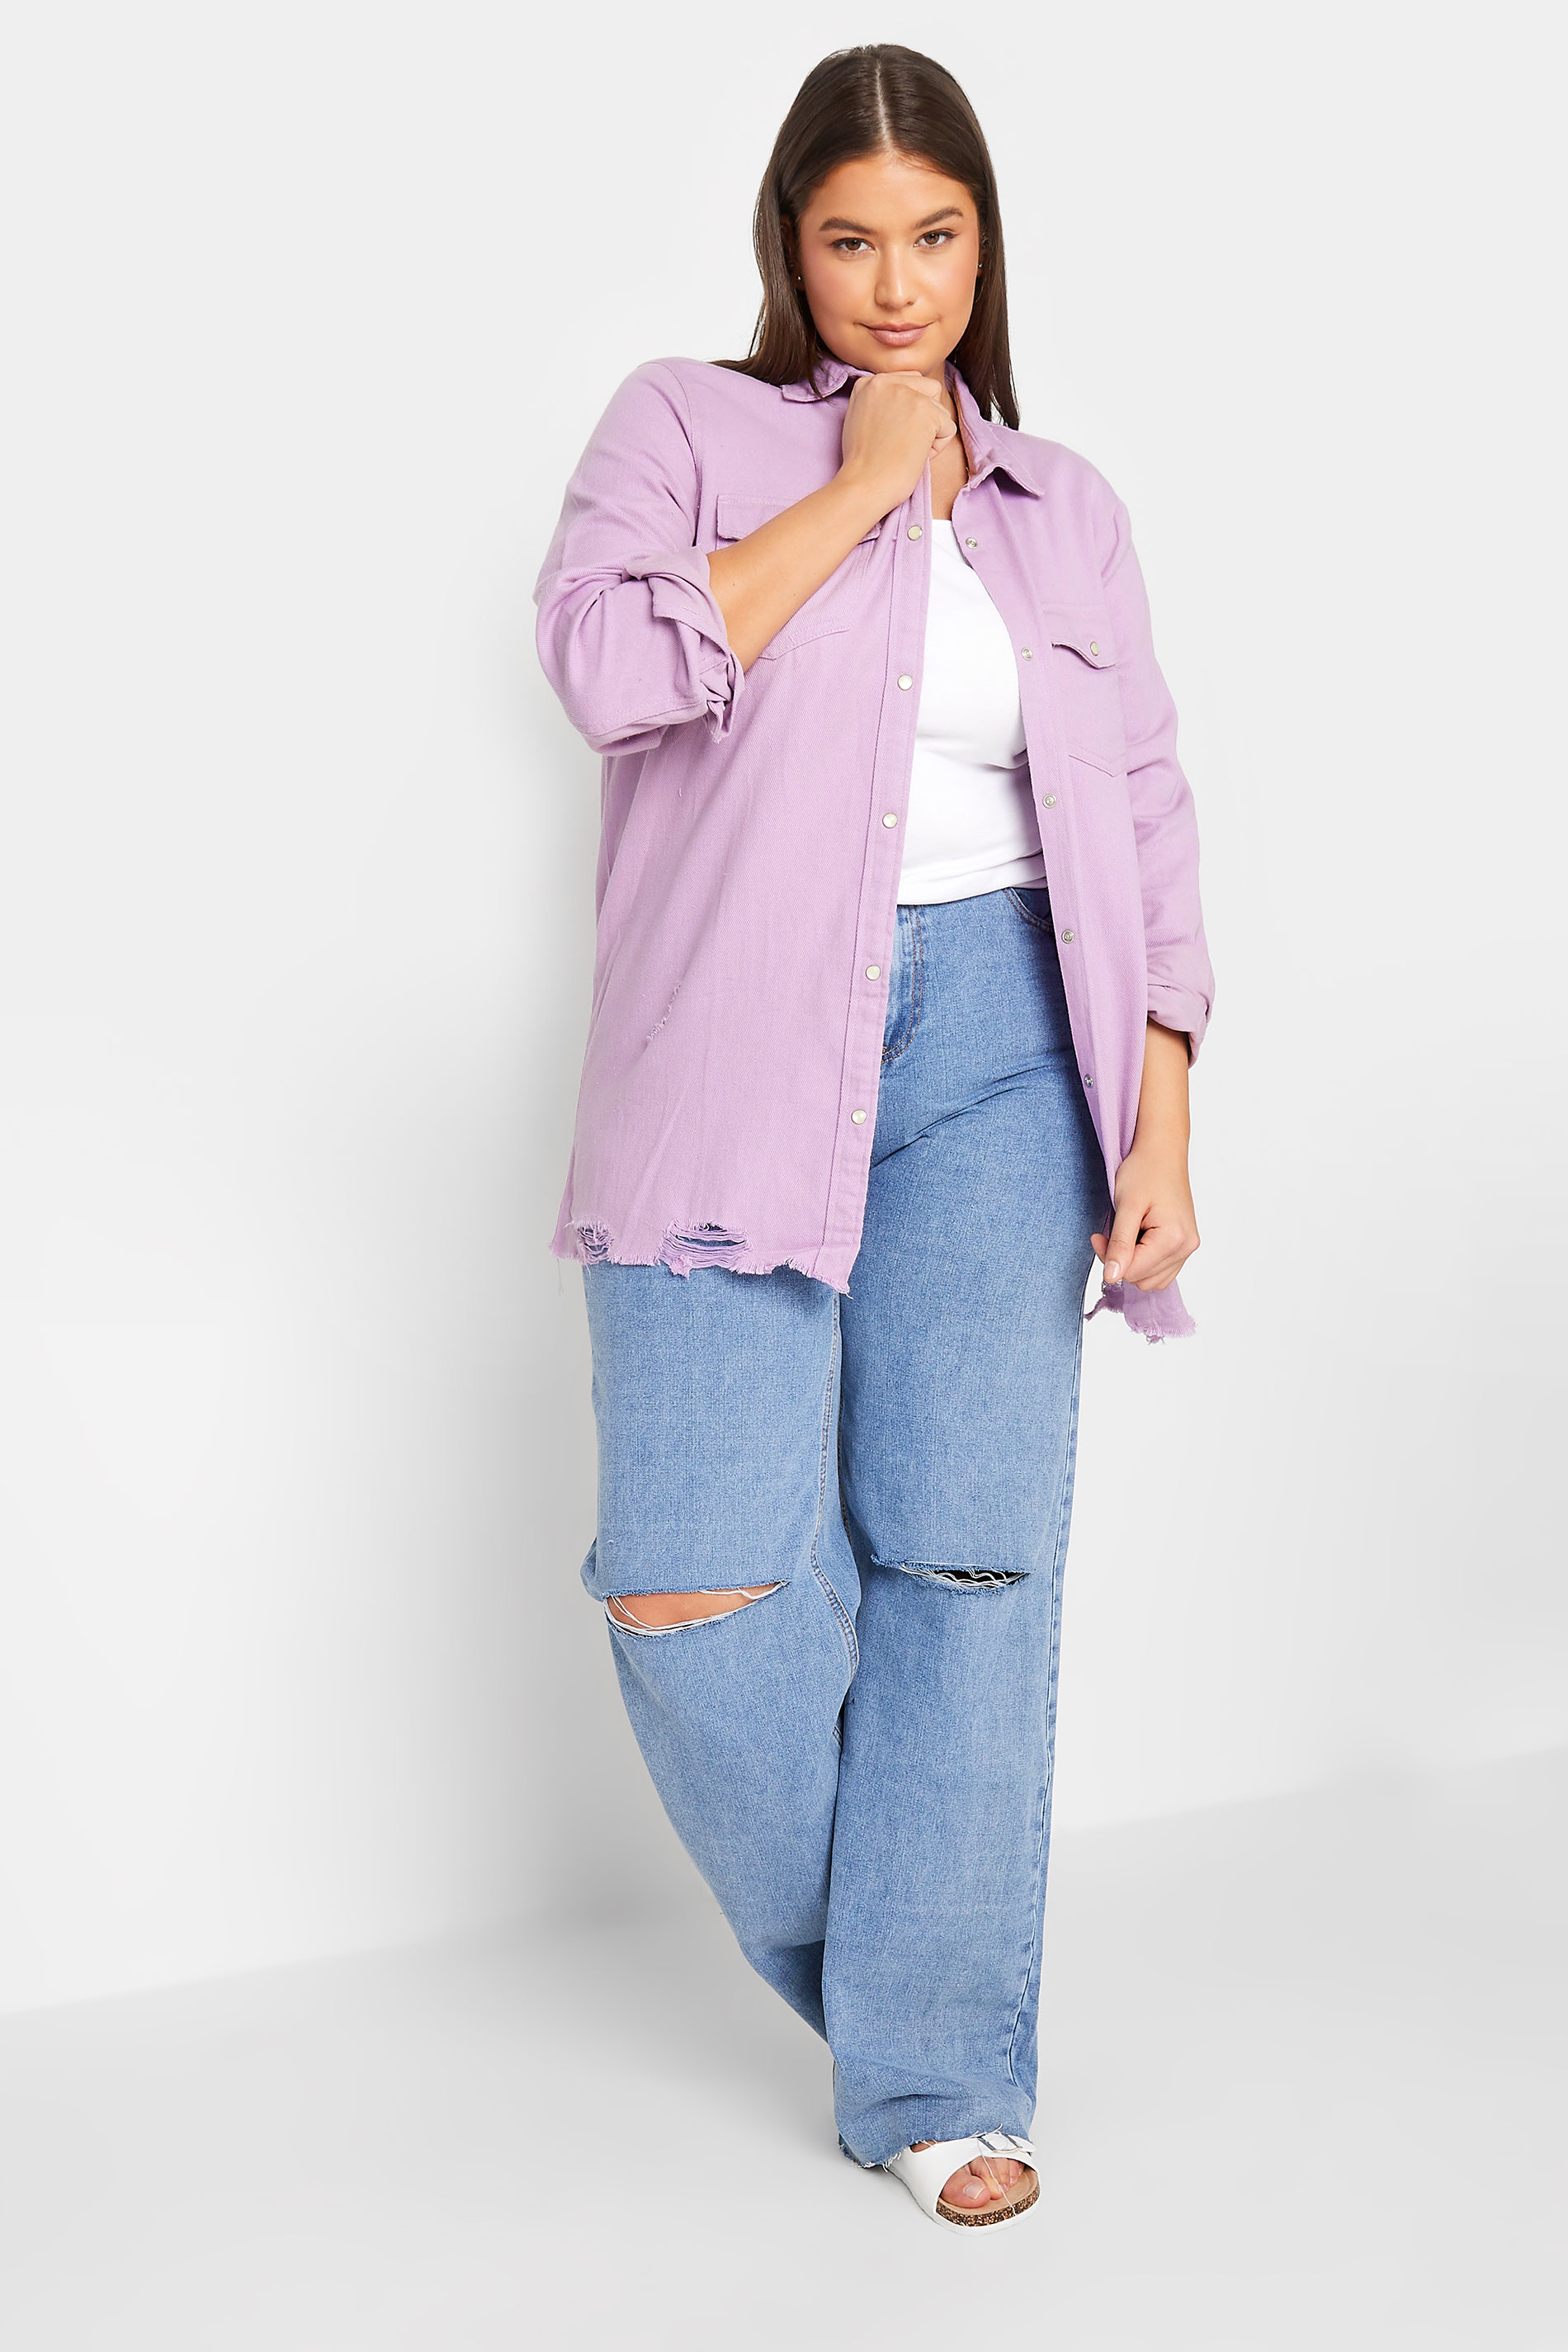 LTS Tall Women's Lilac Purple Distressed Twill Shirt | Long Tall Sally 2